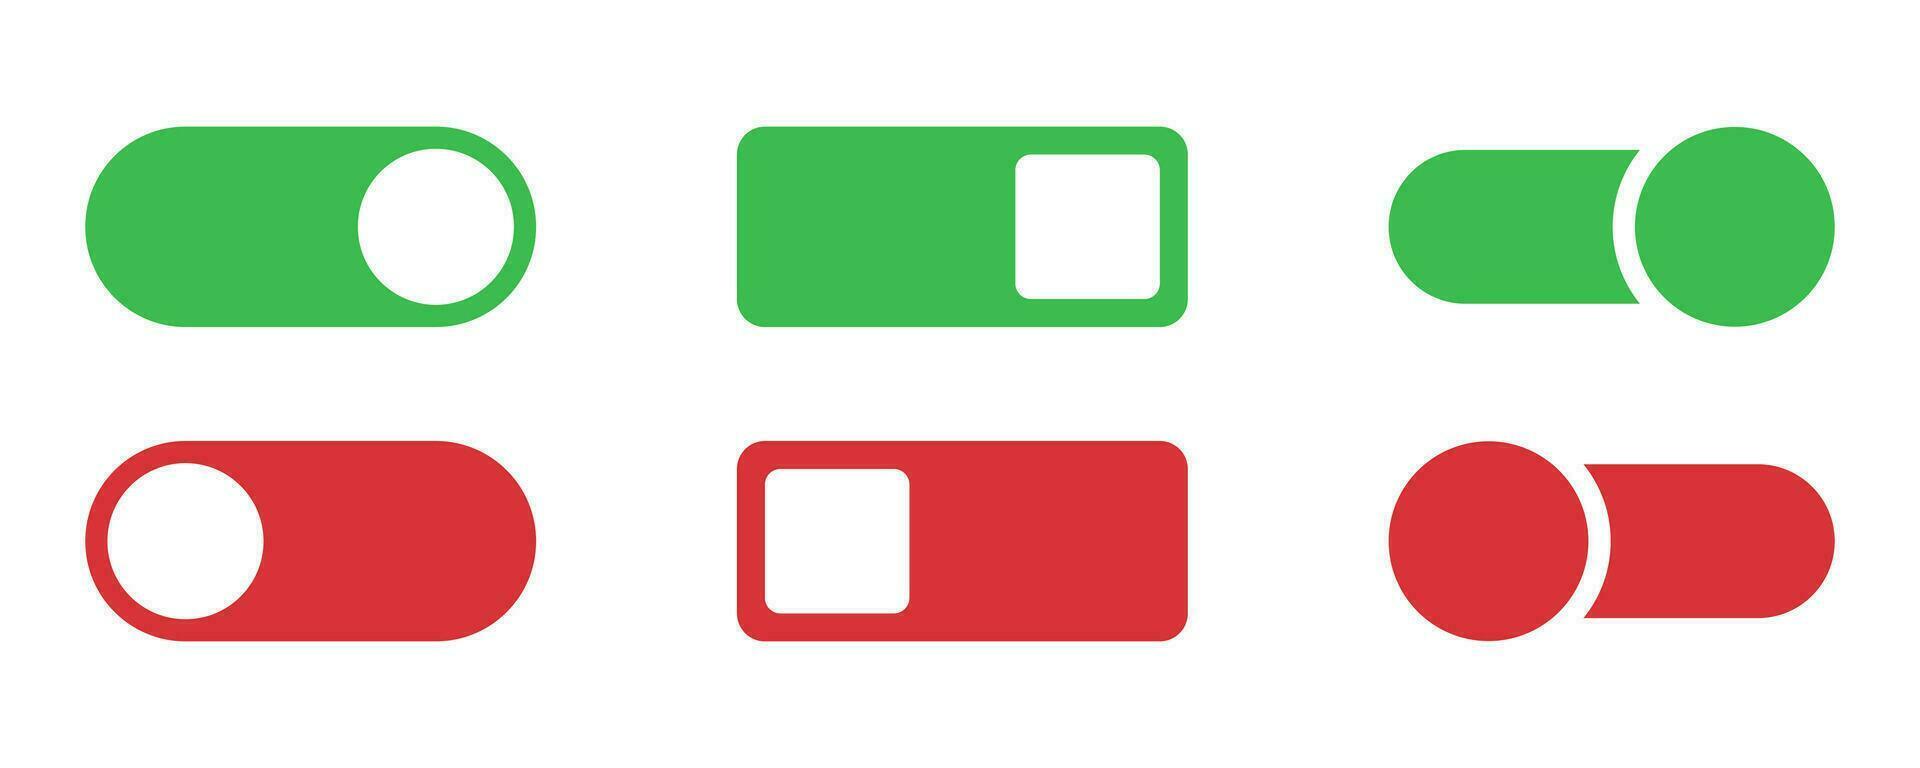 toggle ikon uppsättning. växla toggle reglaget. sväng av och på växla. växlare ikon uppsättning. växlare i grön och röd. sväng på reglaget. aktiva och inaktiv reglaget. stock vektor illustration